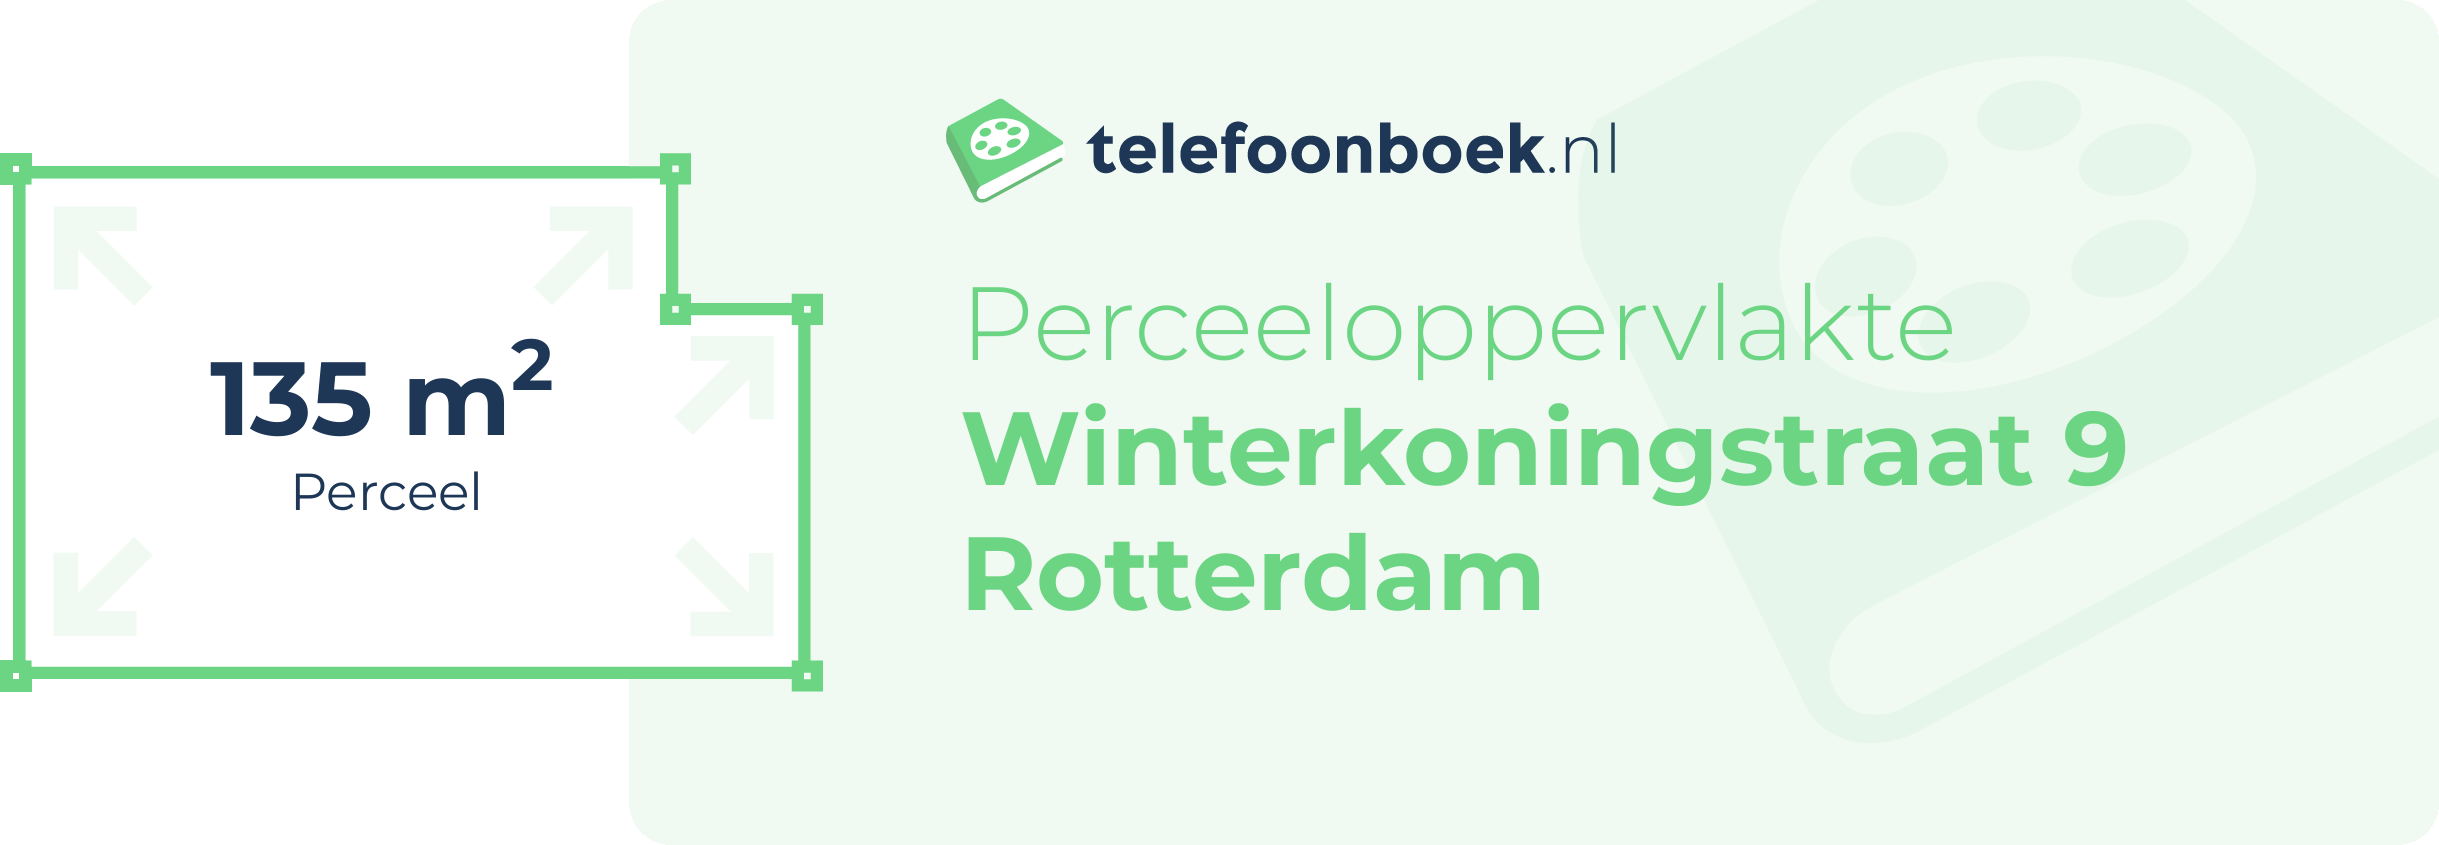 Perceeloppervlakte Winterkoningstraat 9 Rotterdam